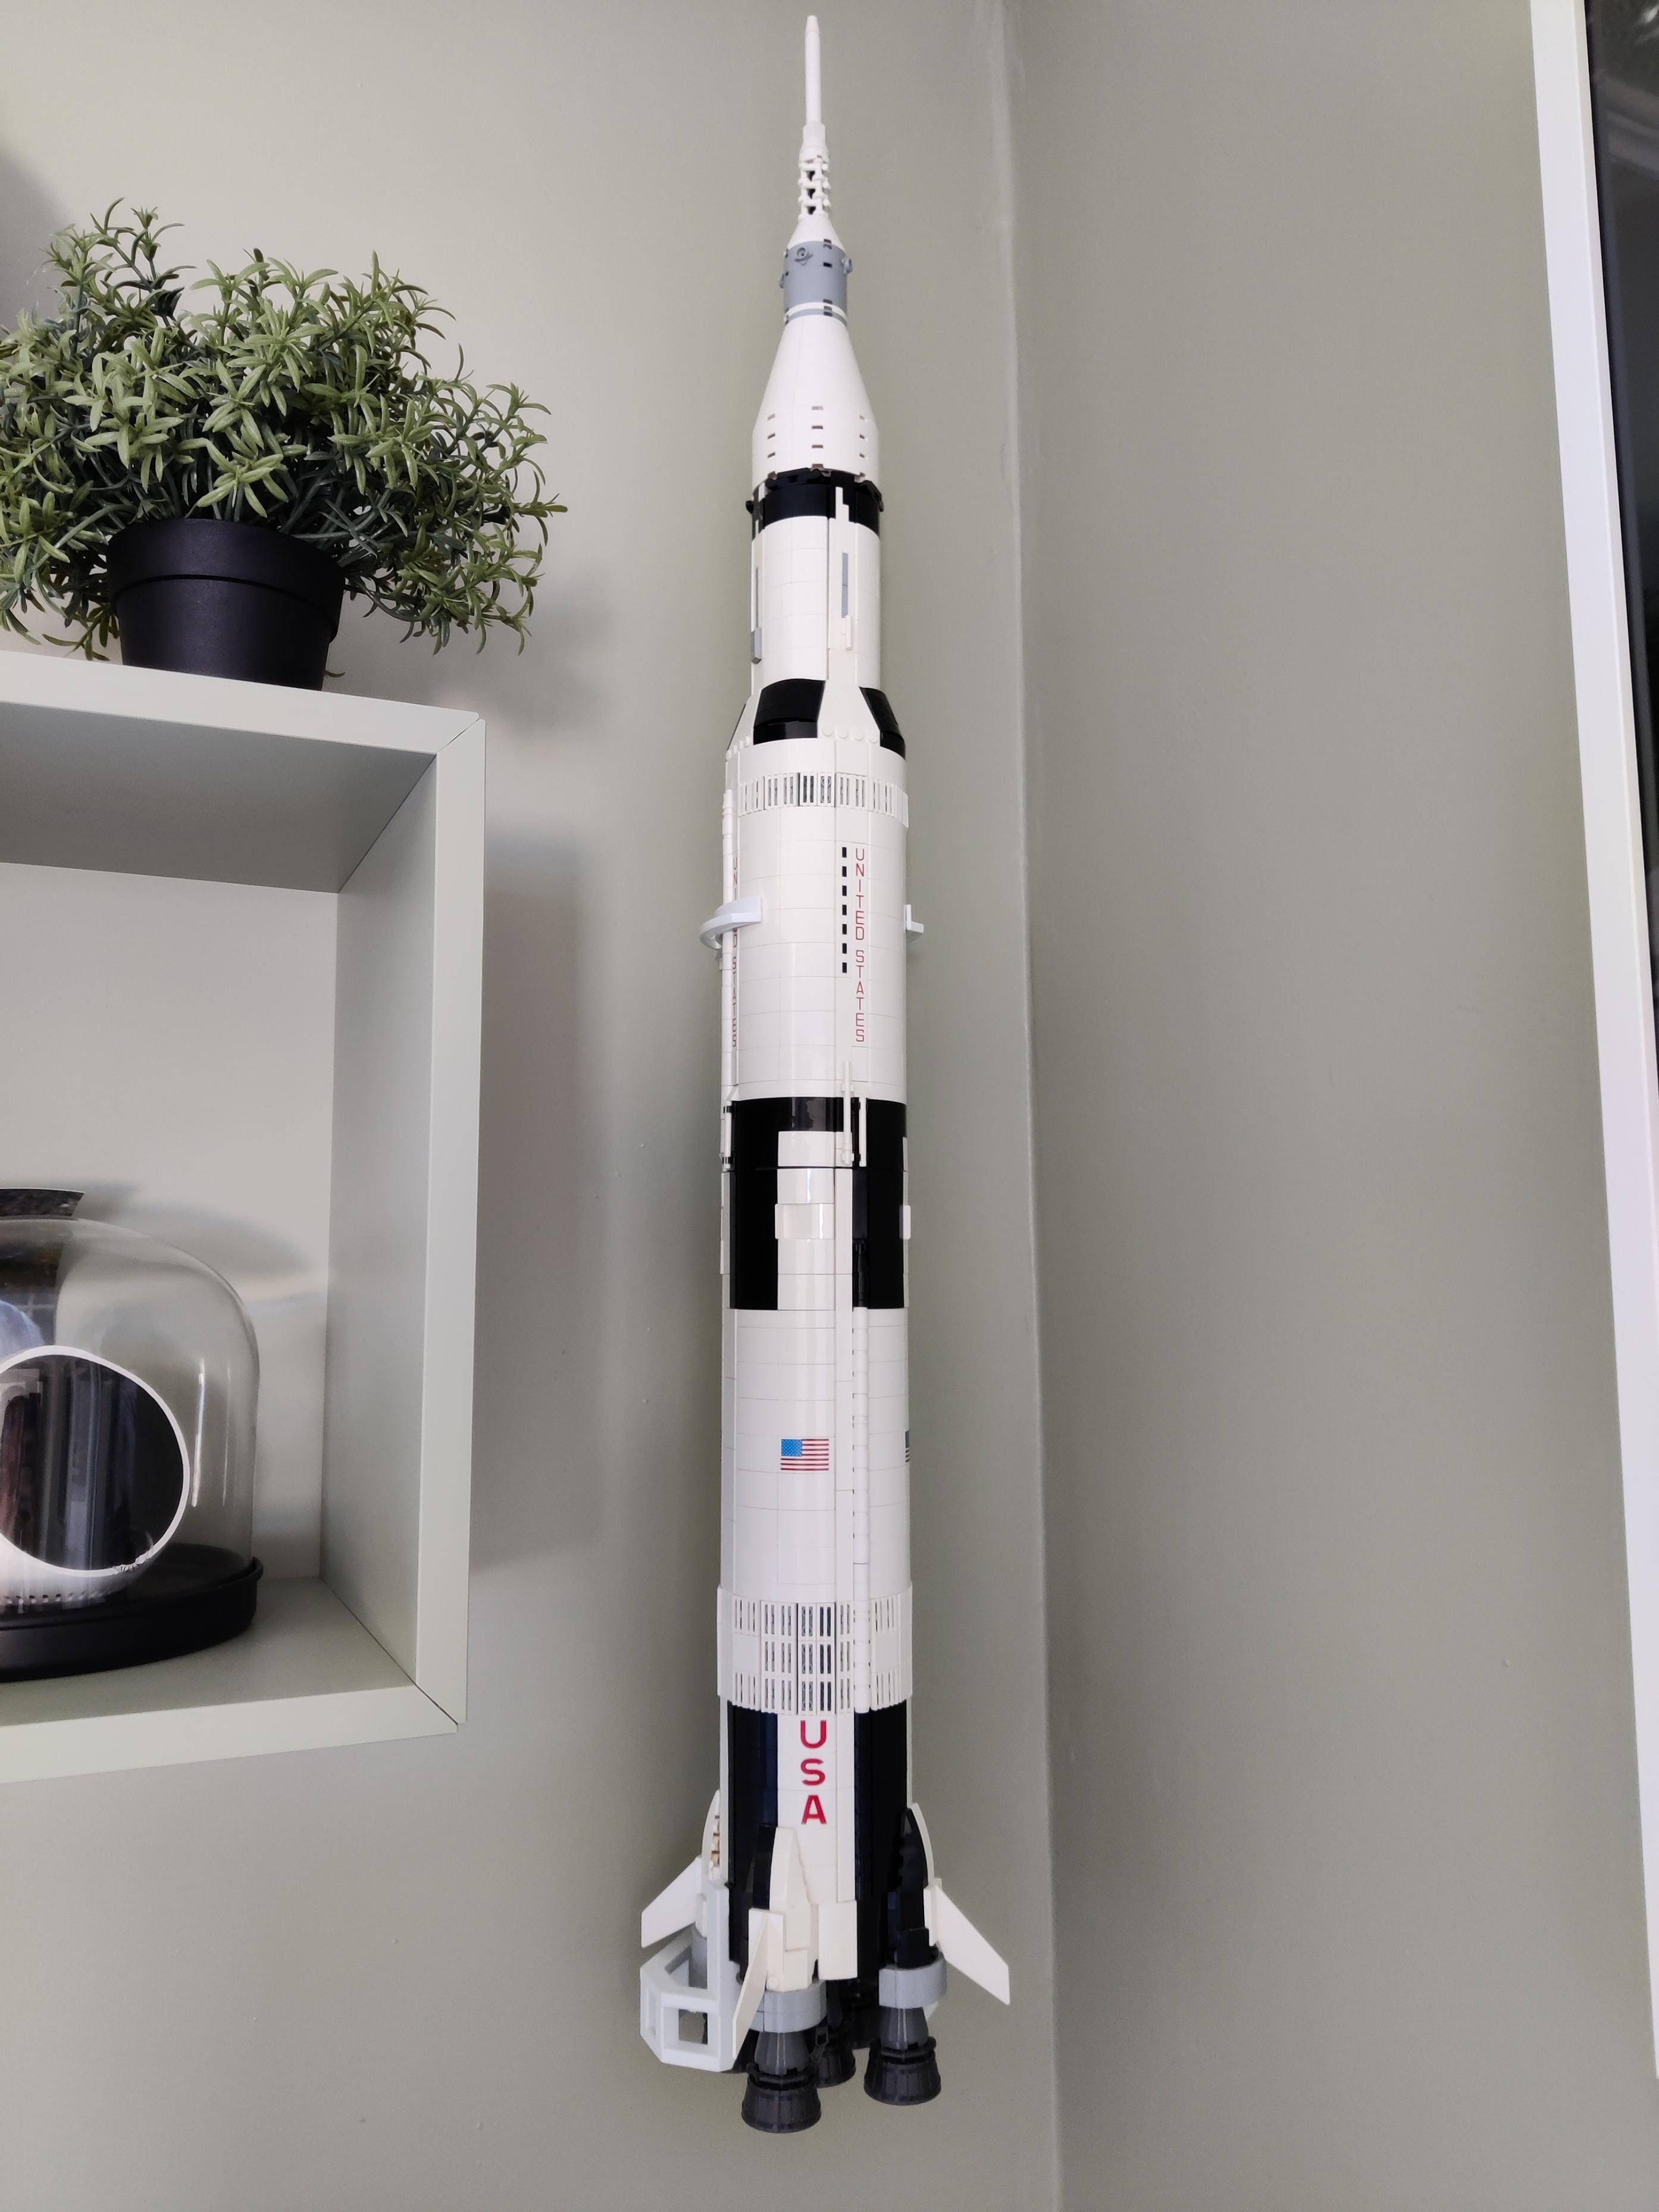 Lego Saturn V wall mount